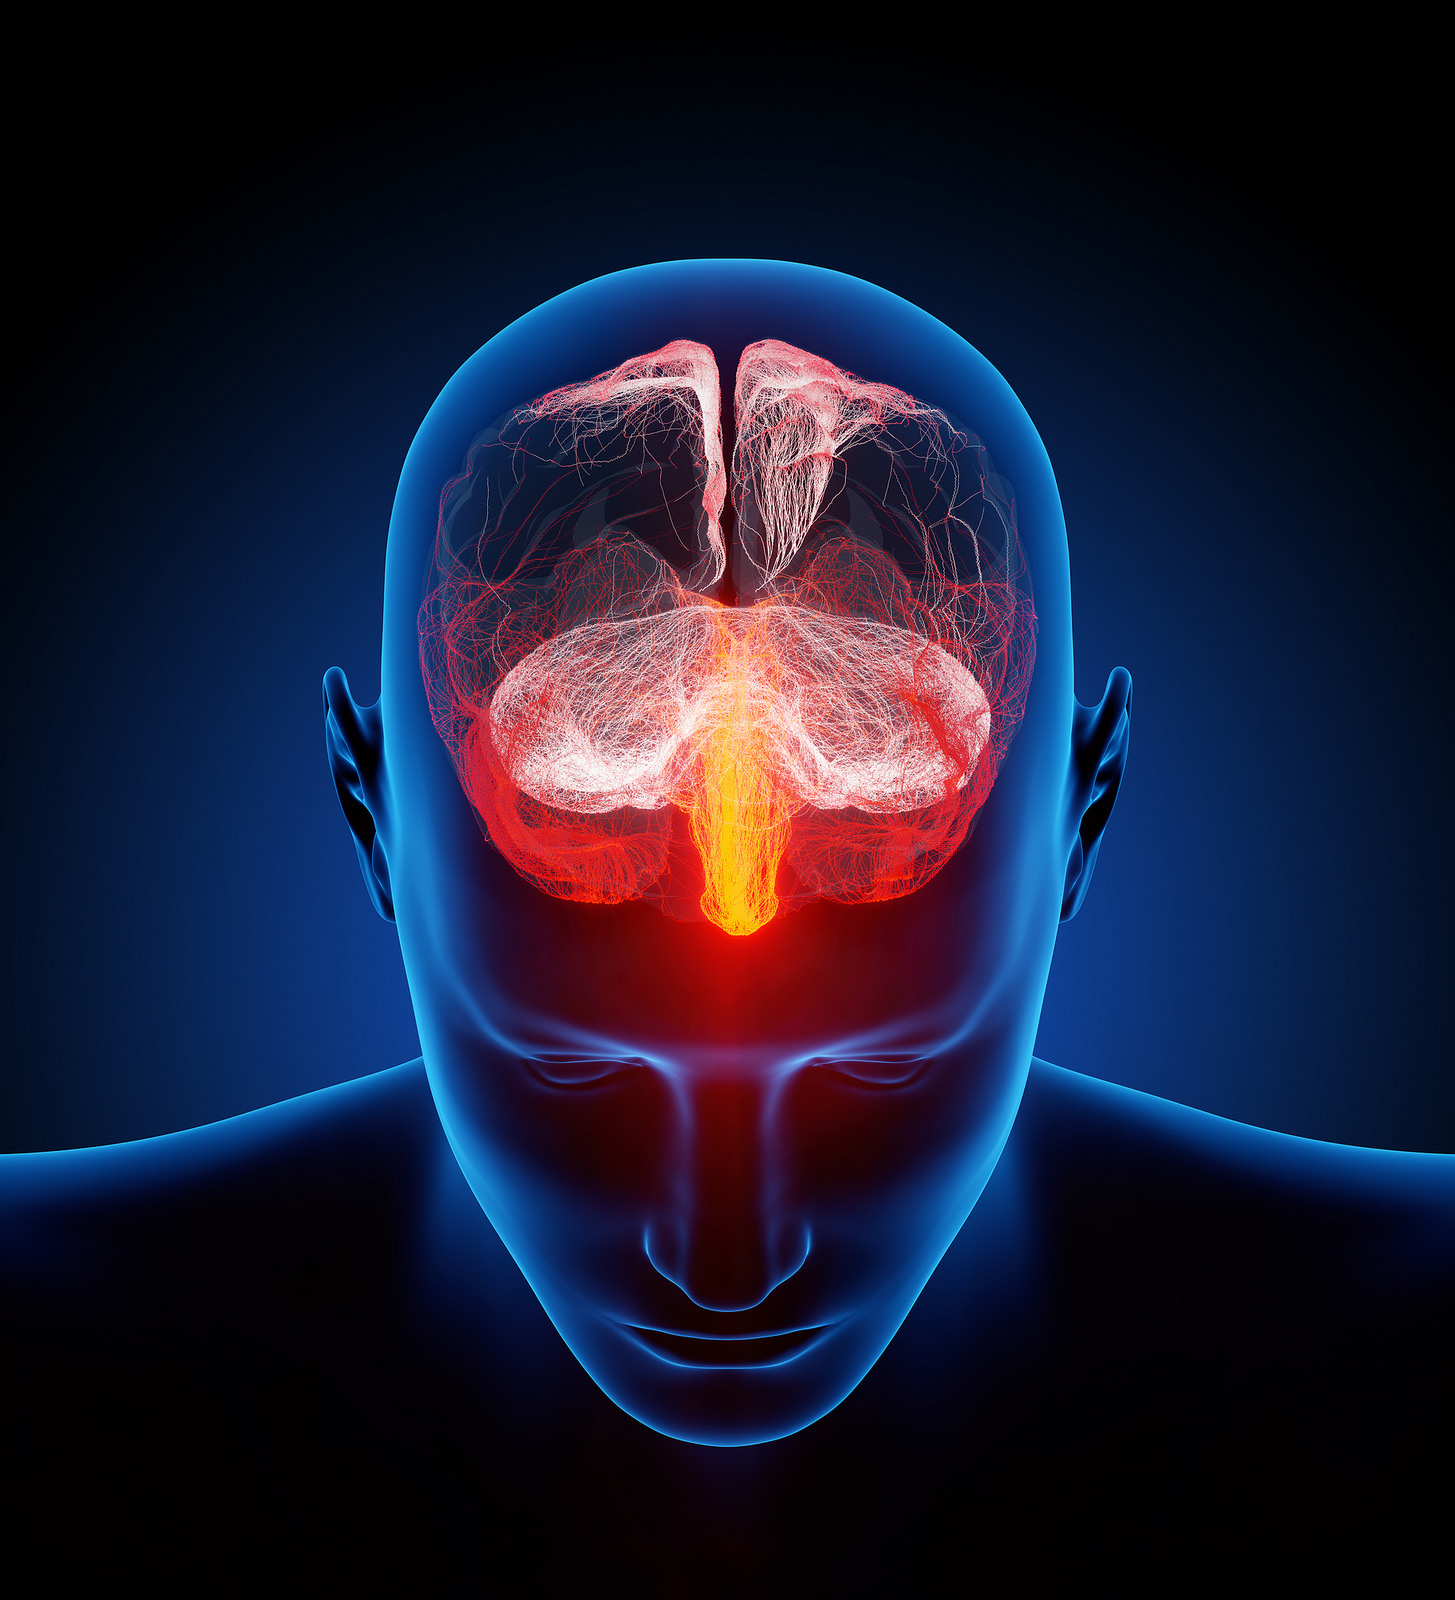 Les maladies neurologiques peuvent toucher le système nerveux central (encéphale et moelle épinière). © Ars Electronica, Flickr, CC by-nc-nd 2.0